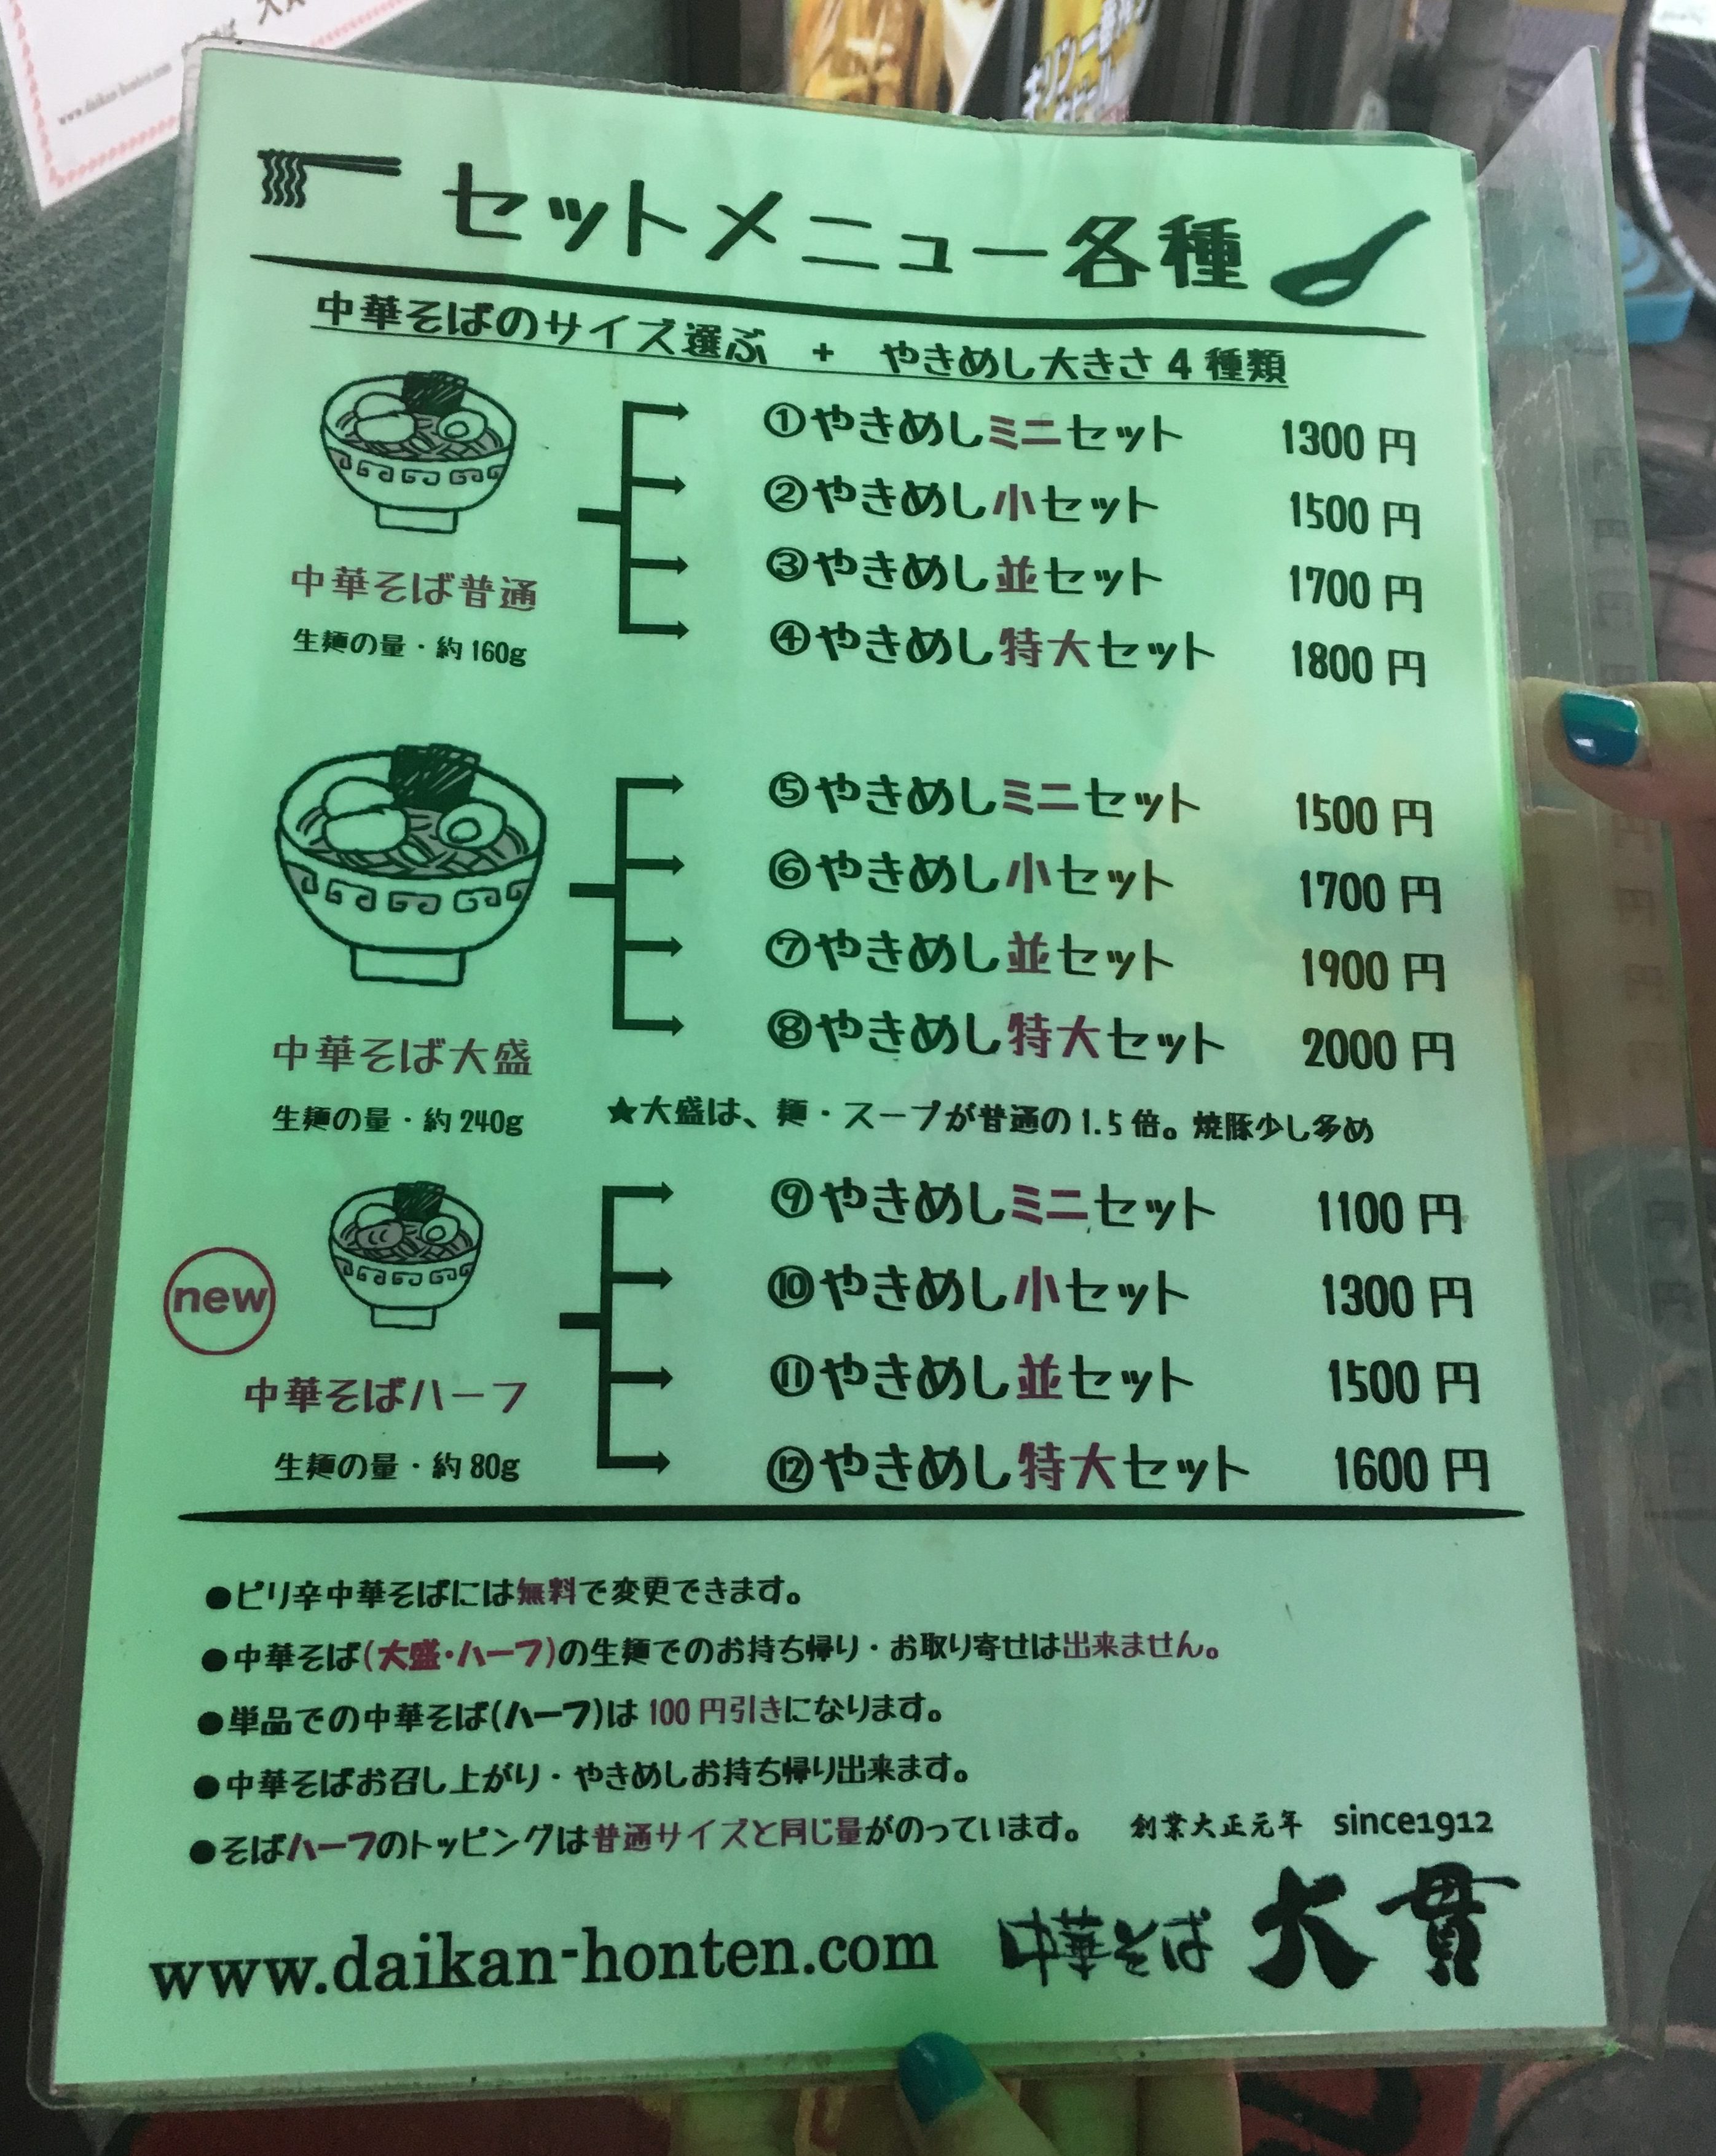 Daikan menu